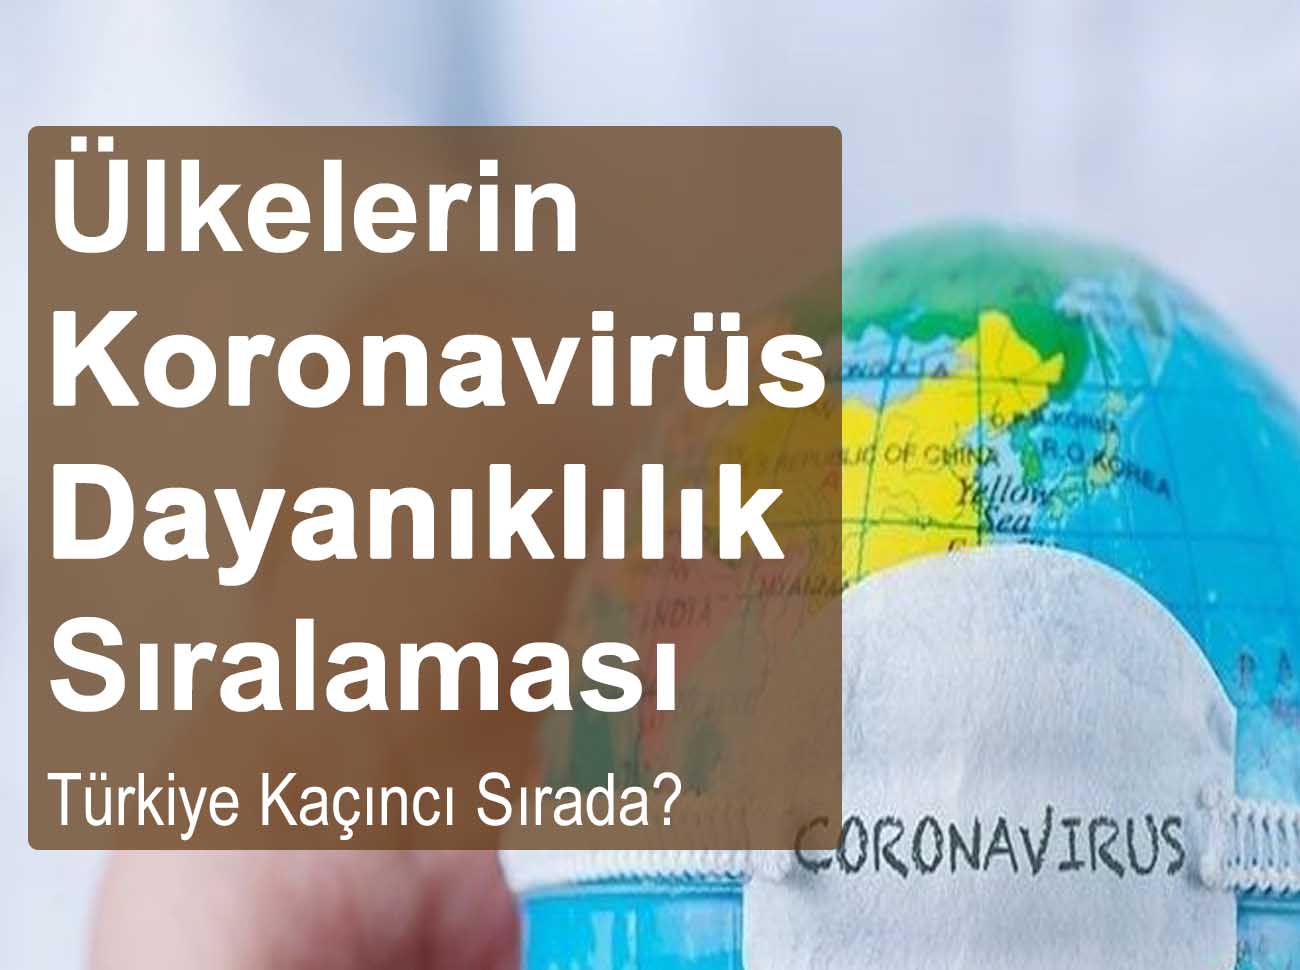 Ülkelerin Koronavirüs Dayanıklılık Sıralaması